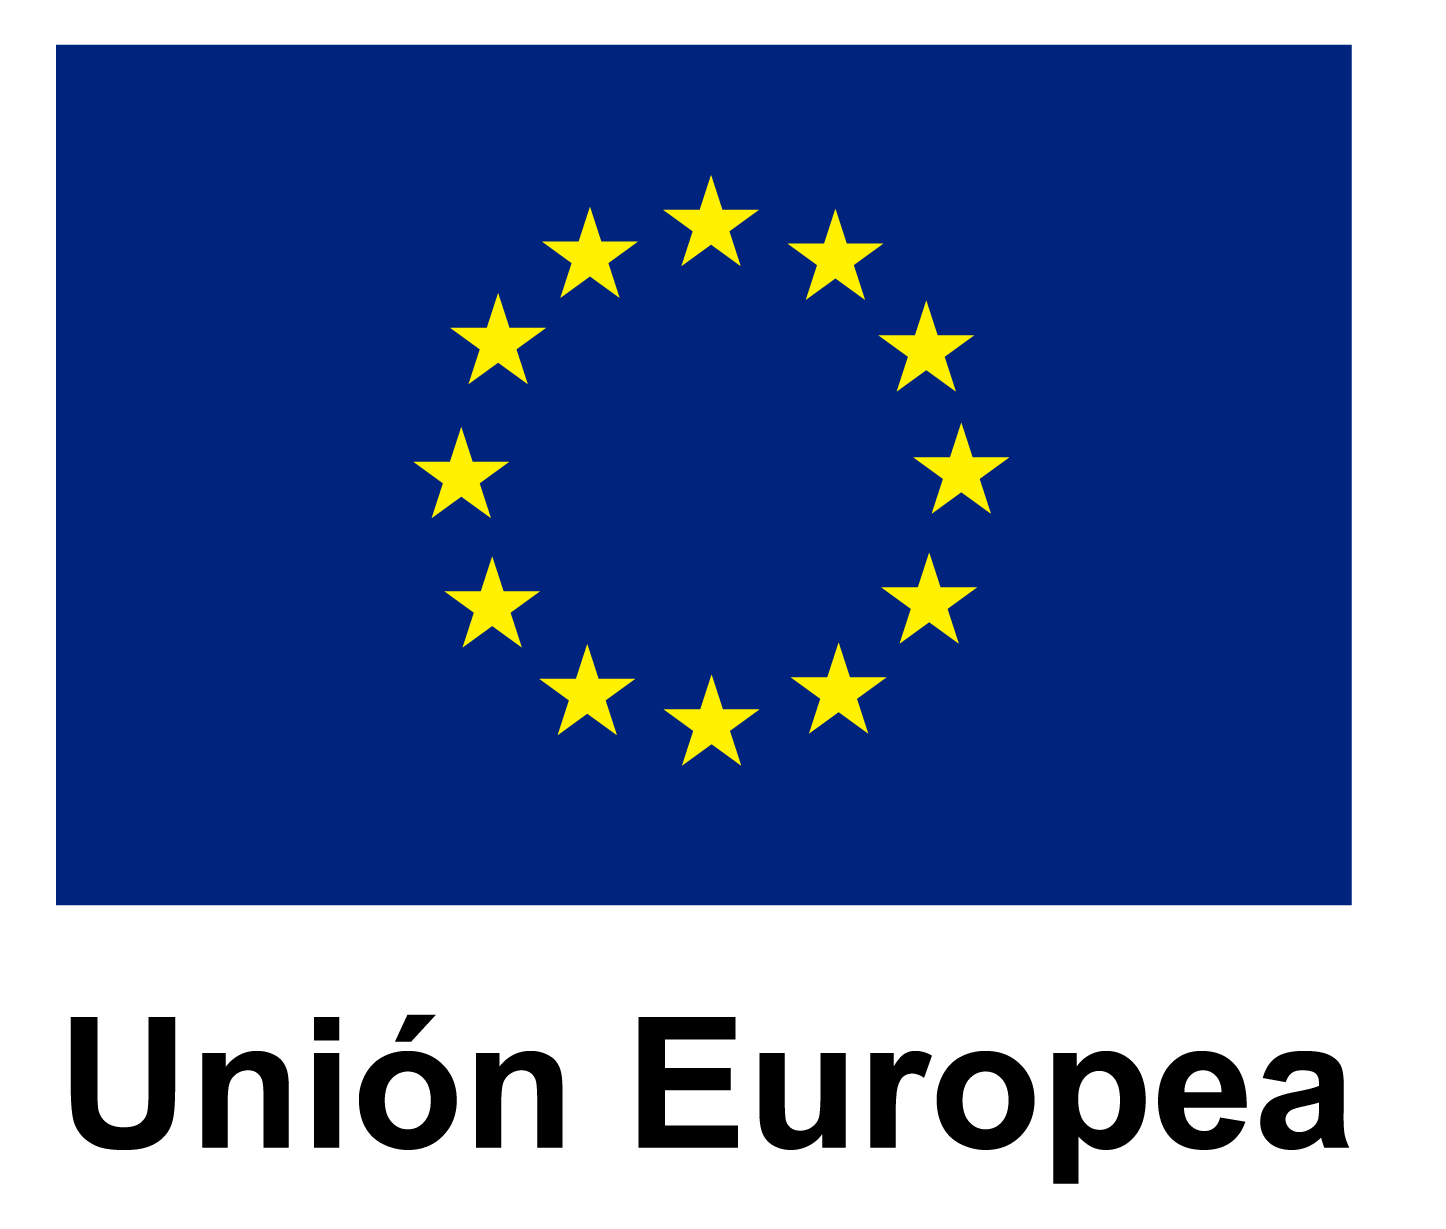 le logo de l' union européenne avec un cercle d' étoiles jaunes